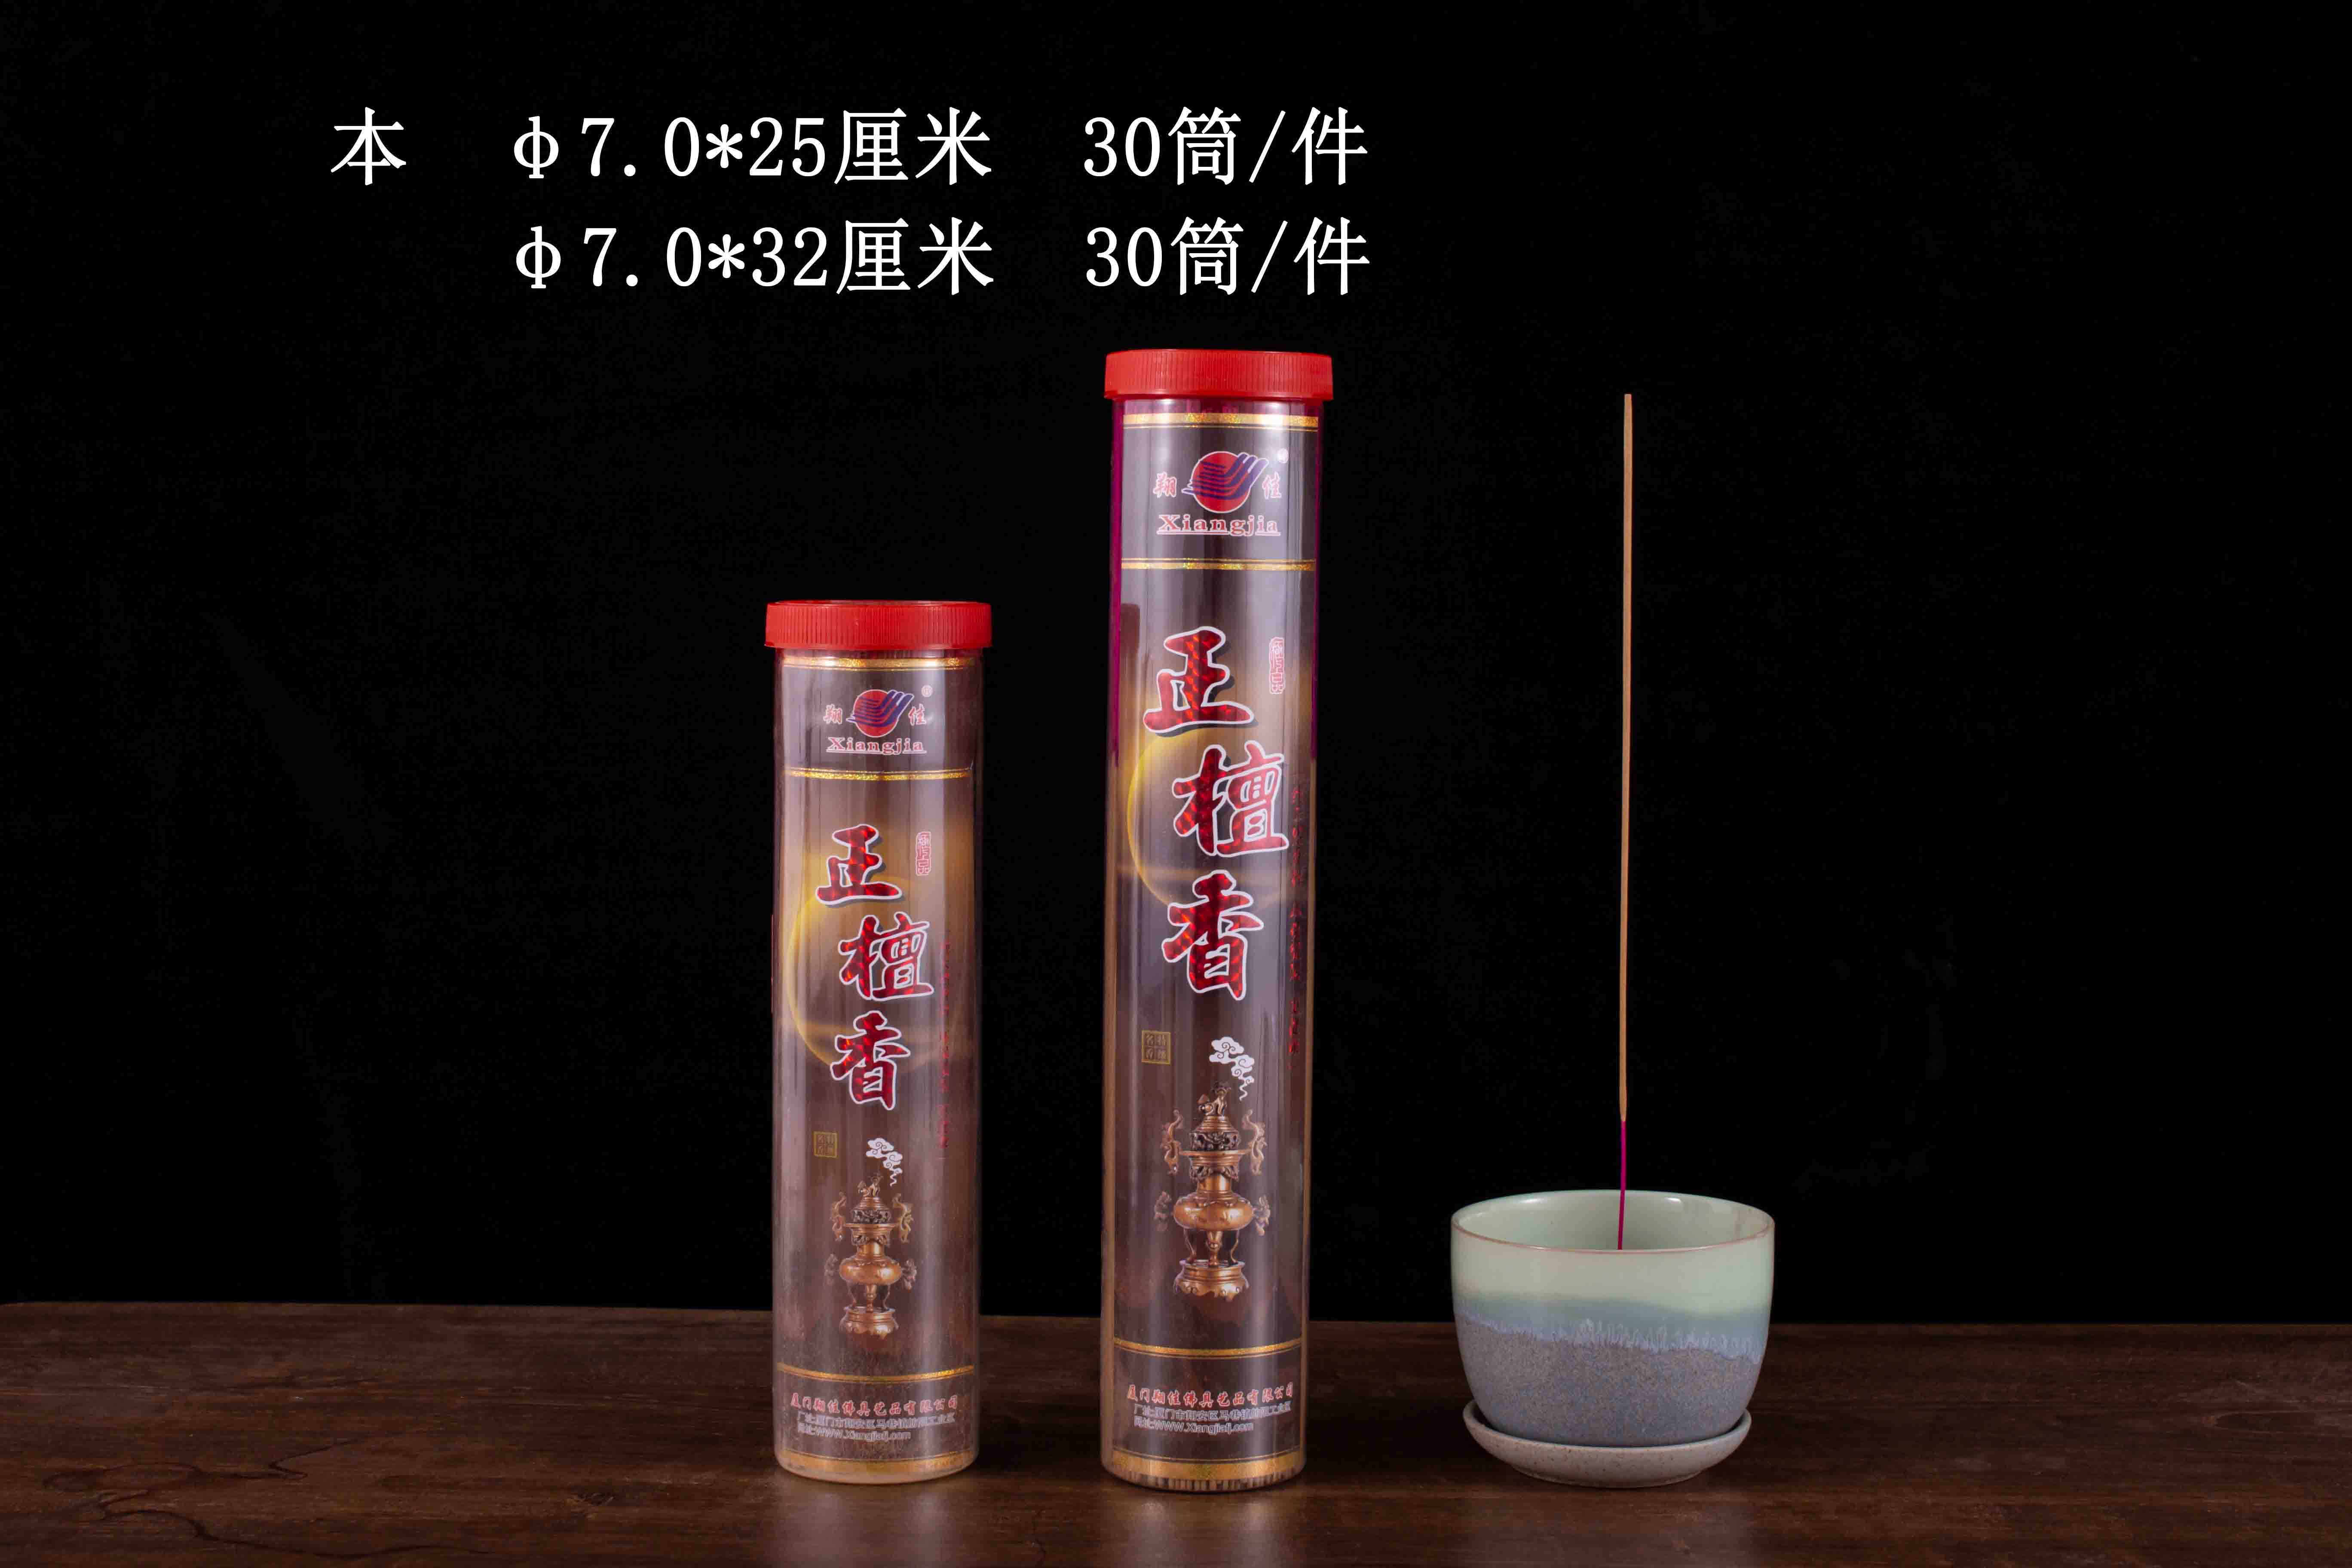 正檀香 7.0 塑料罐装竹签香棒香 翔佳香业